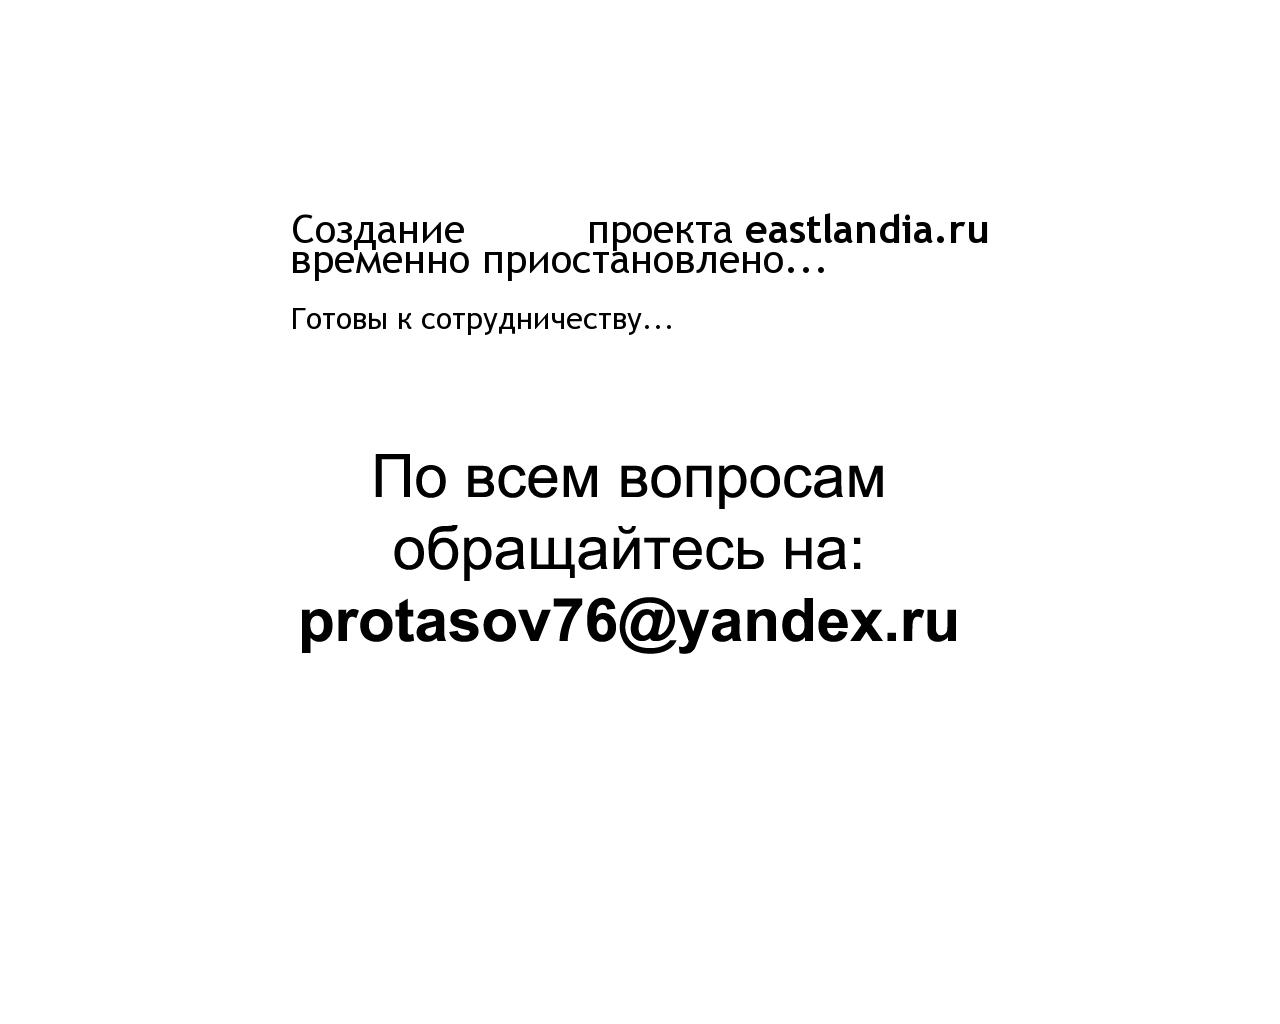 Изображение сайта eastlandia.ru в разрешении 1280x1024